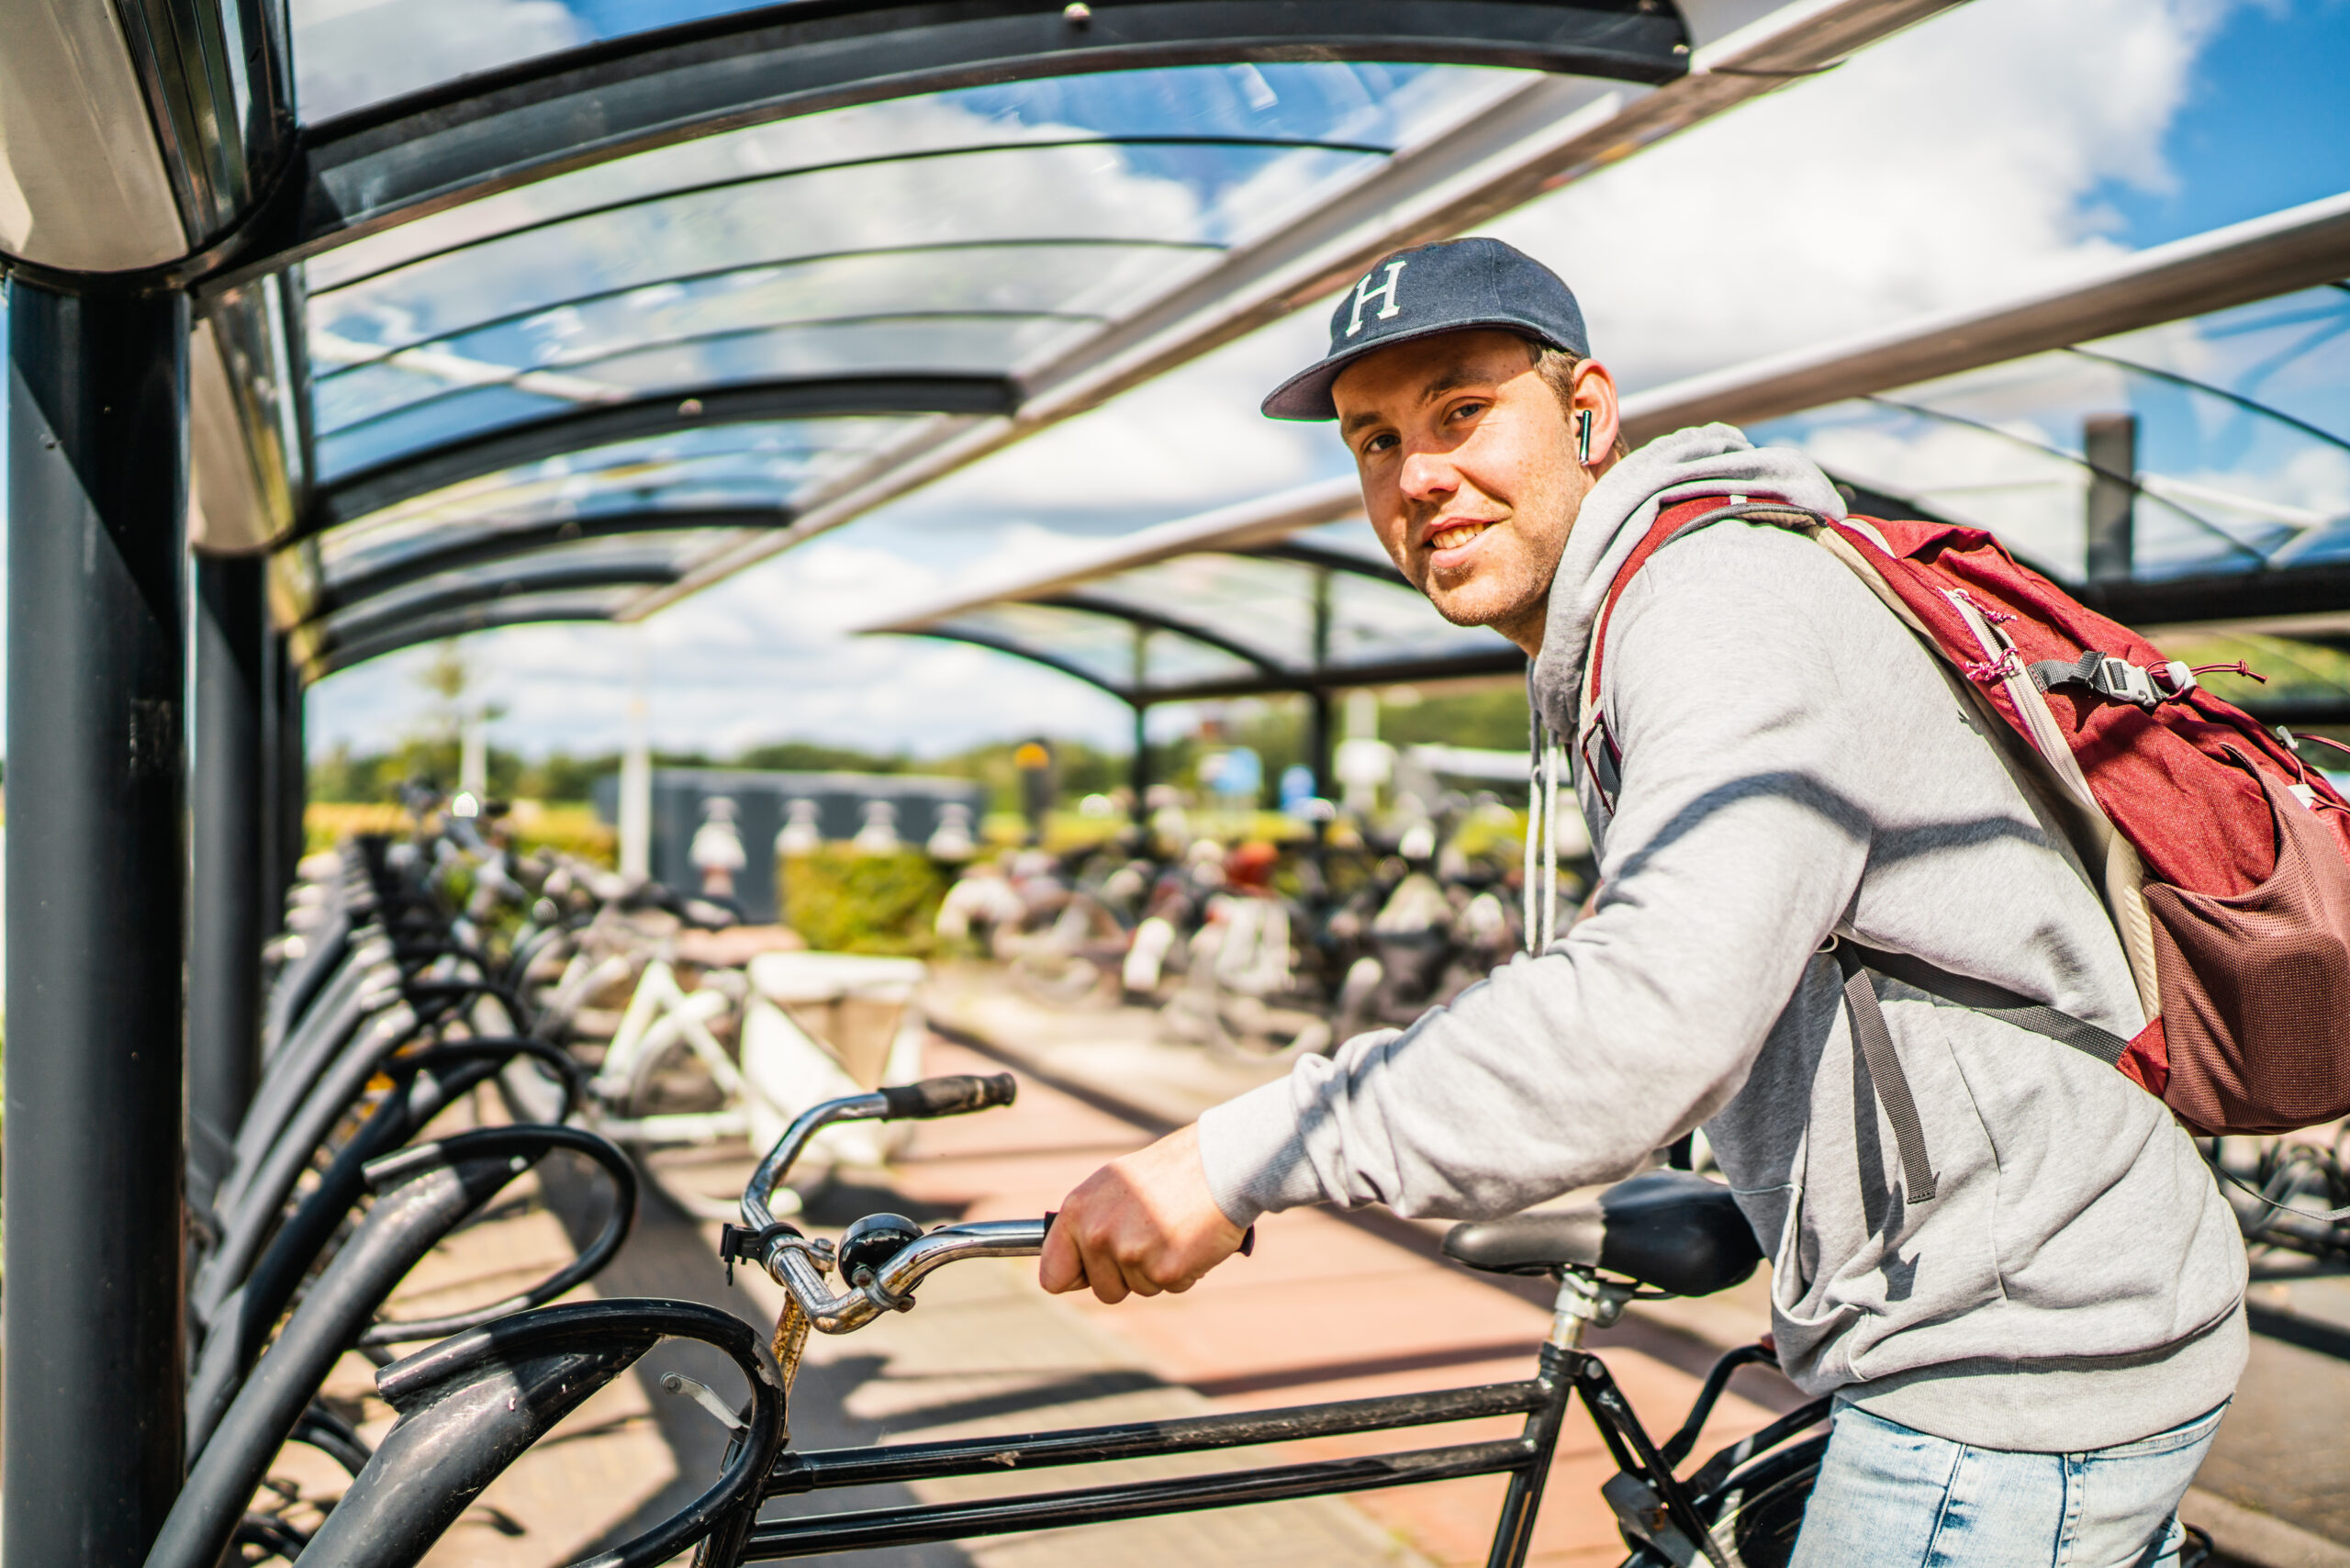 28 miljoen beschikbaar voor fietsen Groningen